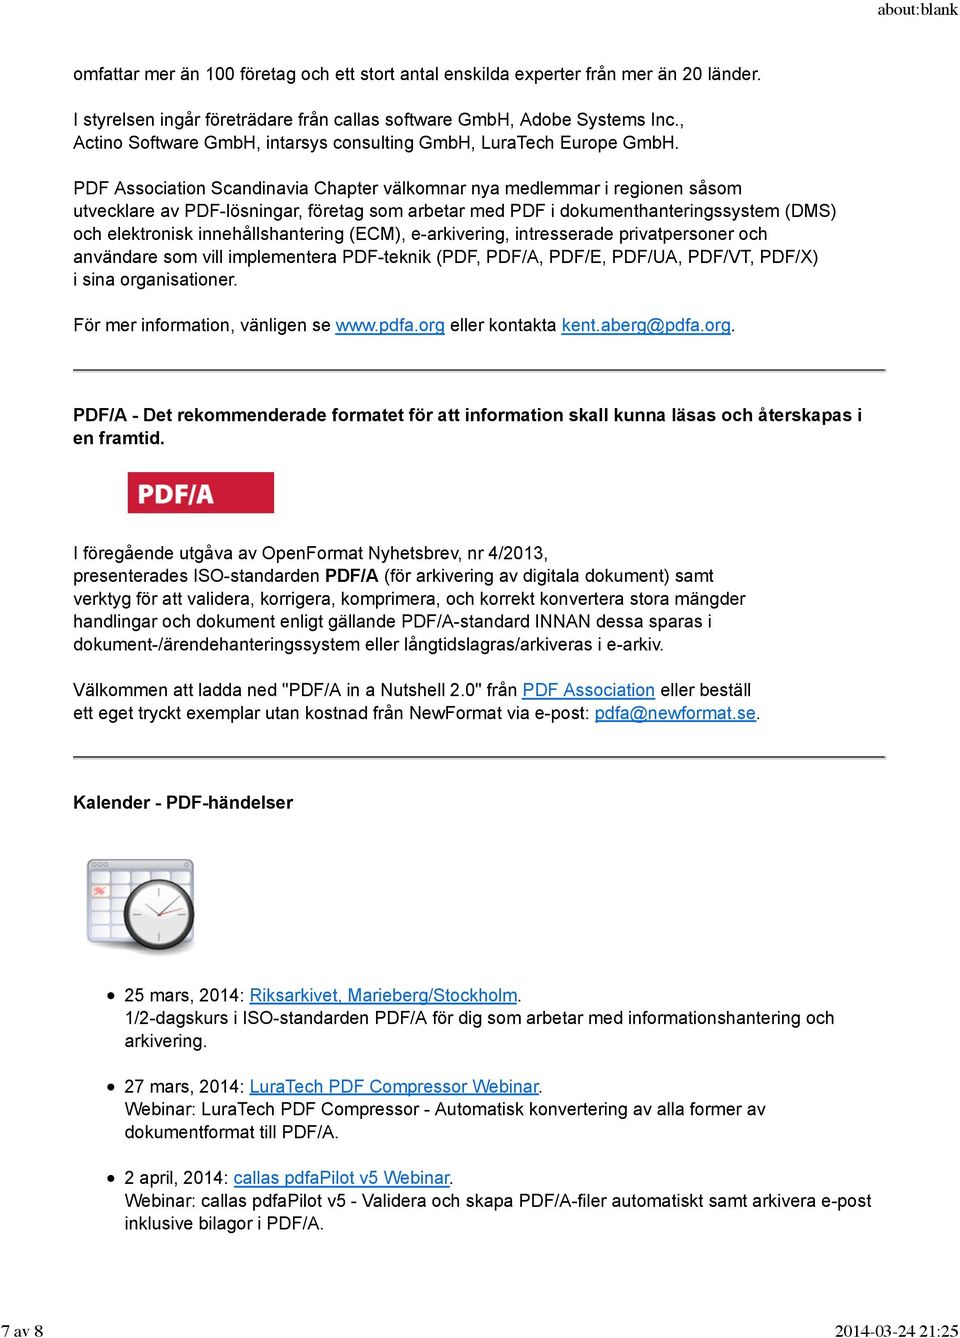 PDF Association Scandinavia Chapter välkomnar nya medlemmar i regionen såsom utvecklare av PDF-lösningar, företag som arbetar med PDF i dokumenthanteringssystem (DMS) och elektronisk